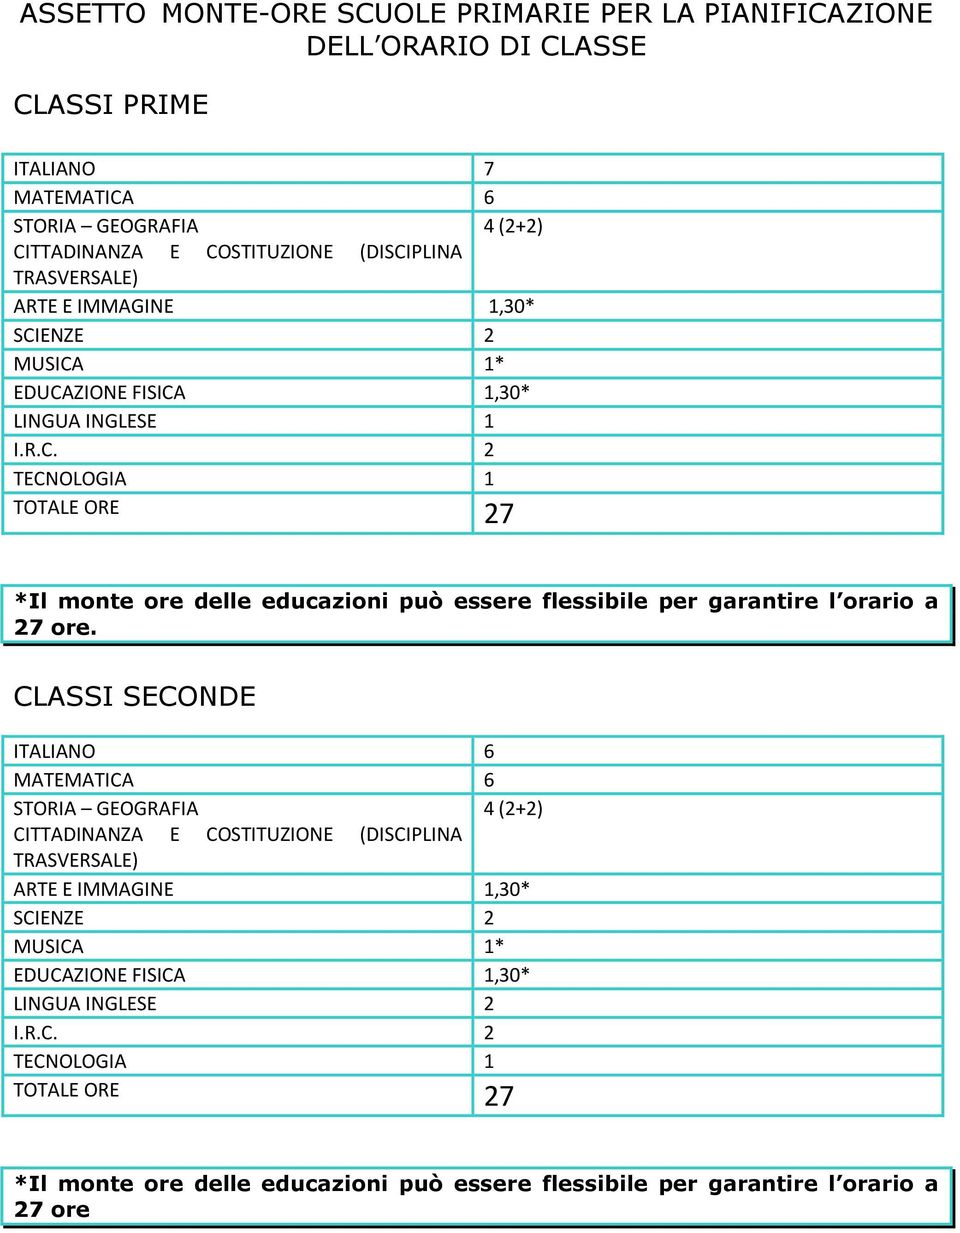 CLASSI SECONDE ITALIANO 6 MATEMATICA 6 STORIA GEOGRAFIA 4 (2+2) CITTADINANZA E COSTITUZIONE (DISCIPLINA TRASVERSALE) ARTE E IMMAGINE 1,30* SCIENZE 2 MUSICA 1* EDUCAZIONE FISICA